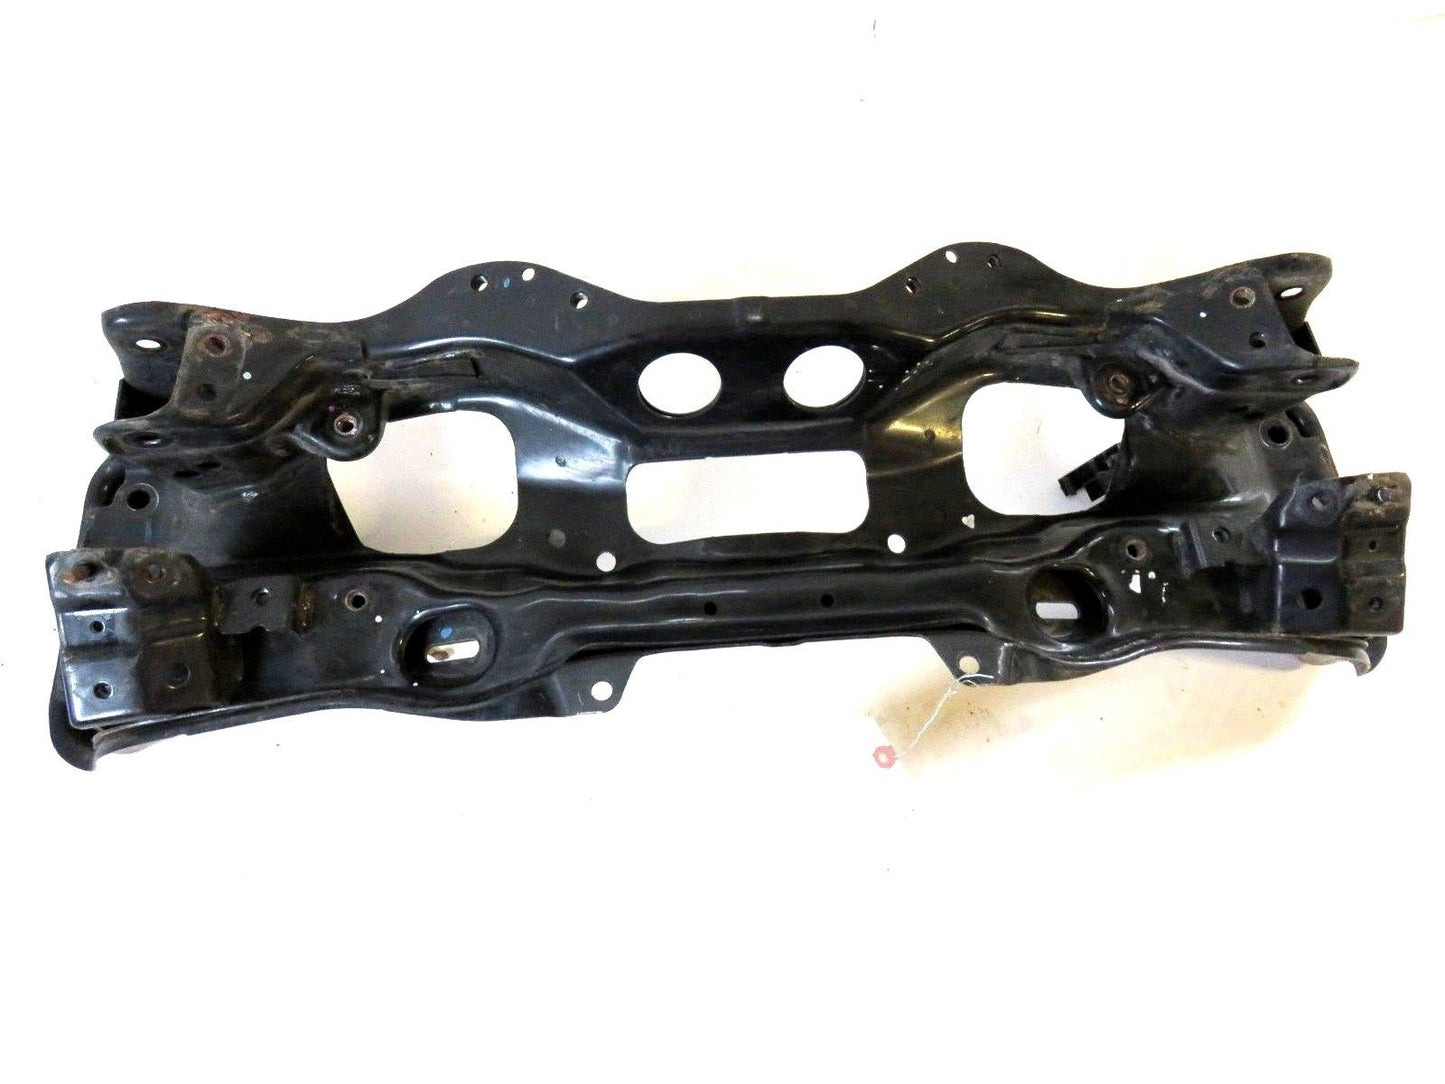 2013-2014 Subaru XV Crosstrek Front Subframe Engine Cradle Crossmember